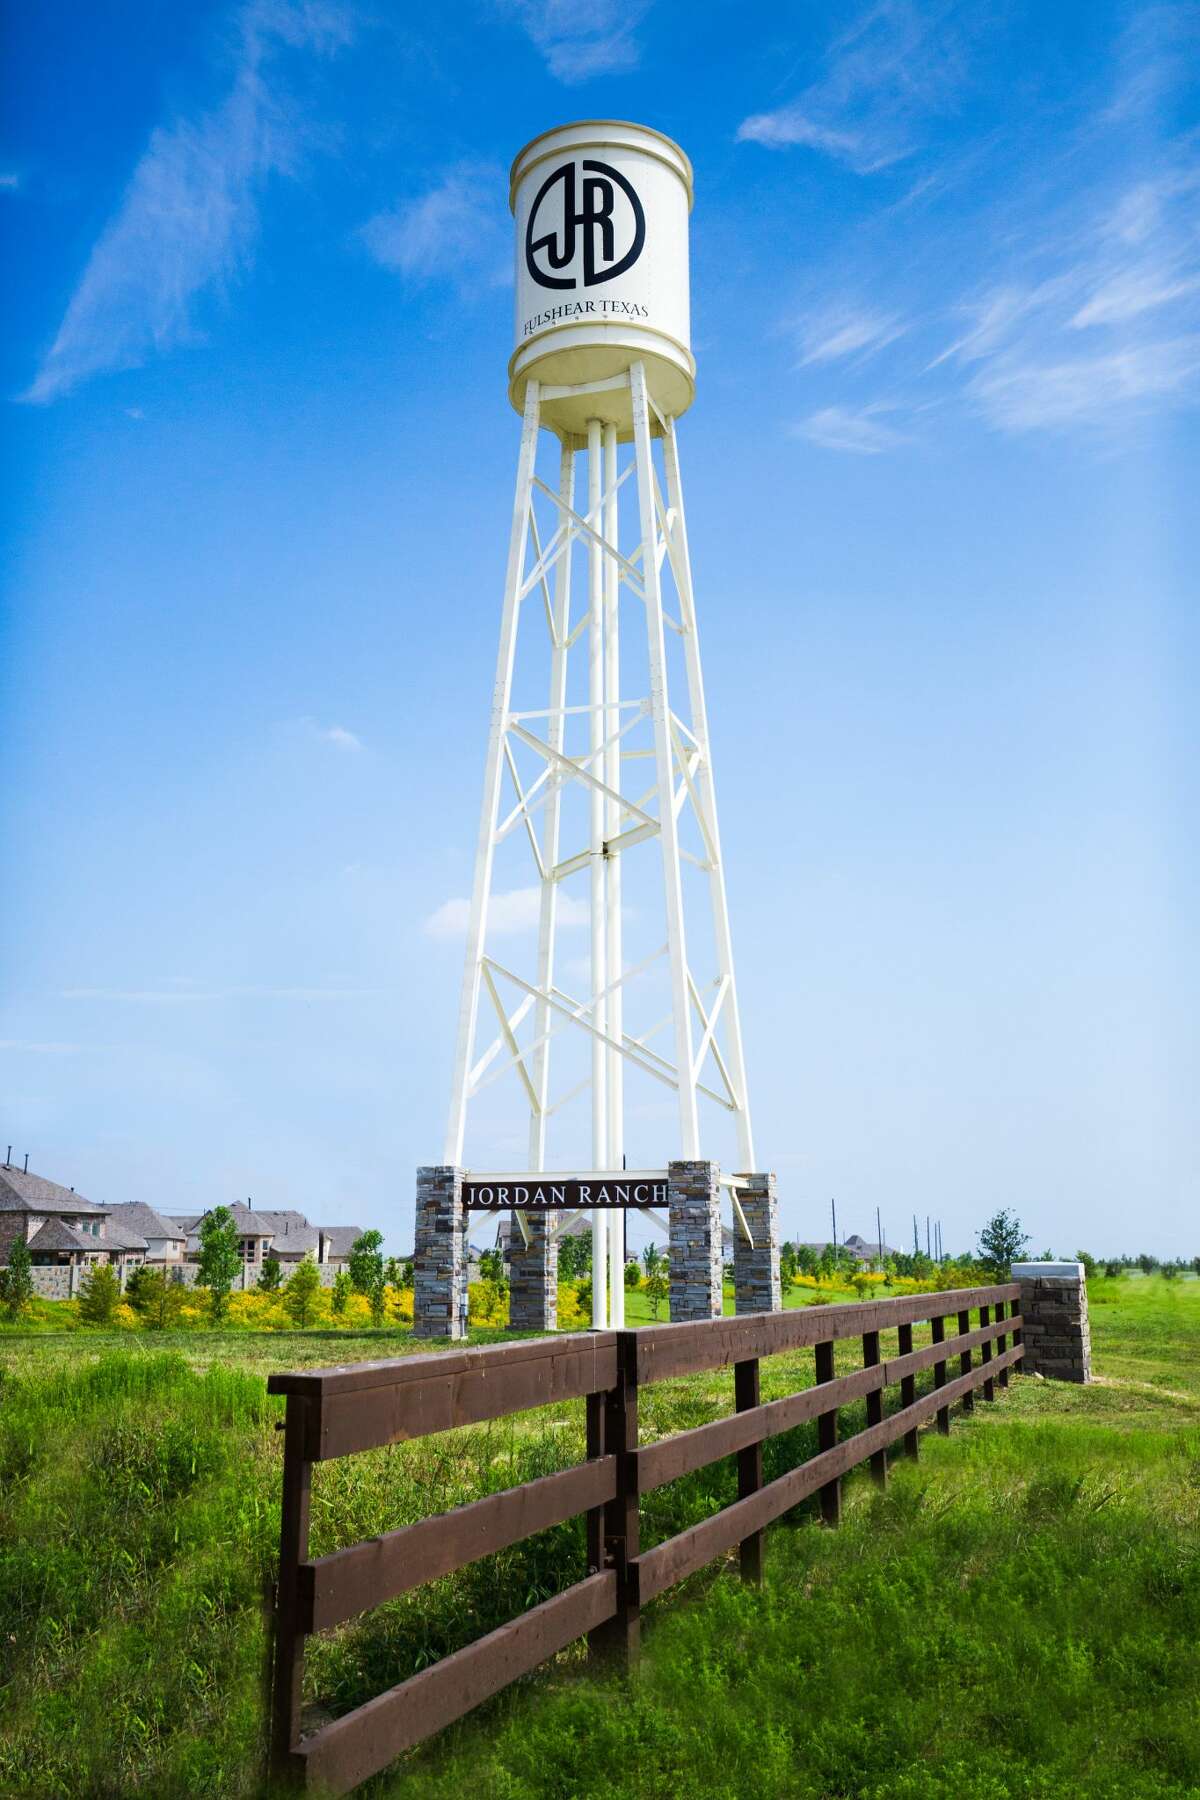 The Jordan Ranch community is a development of Johnson Development in Fulshear.